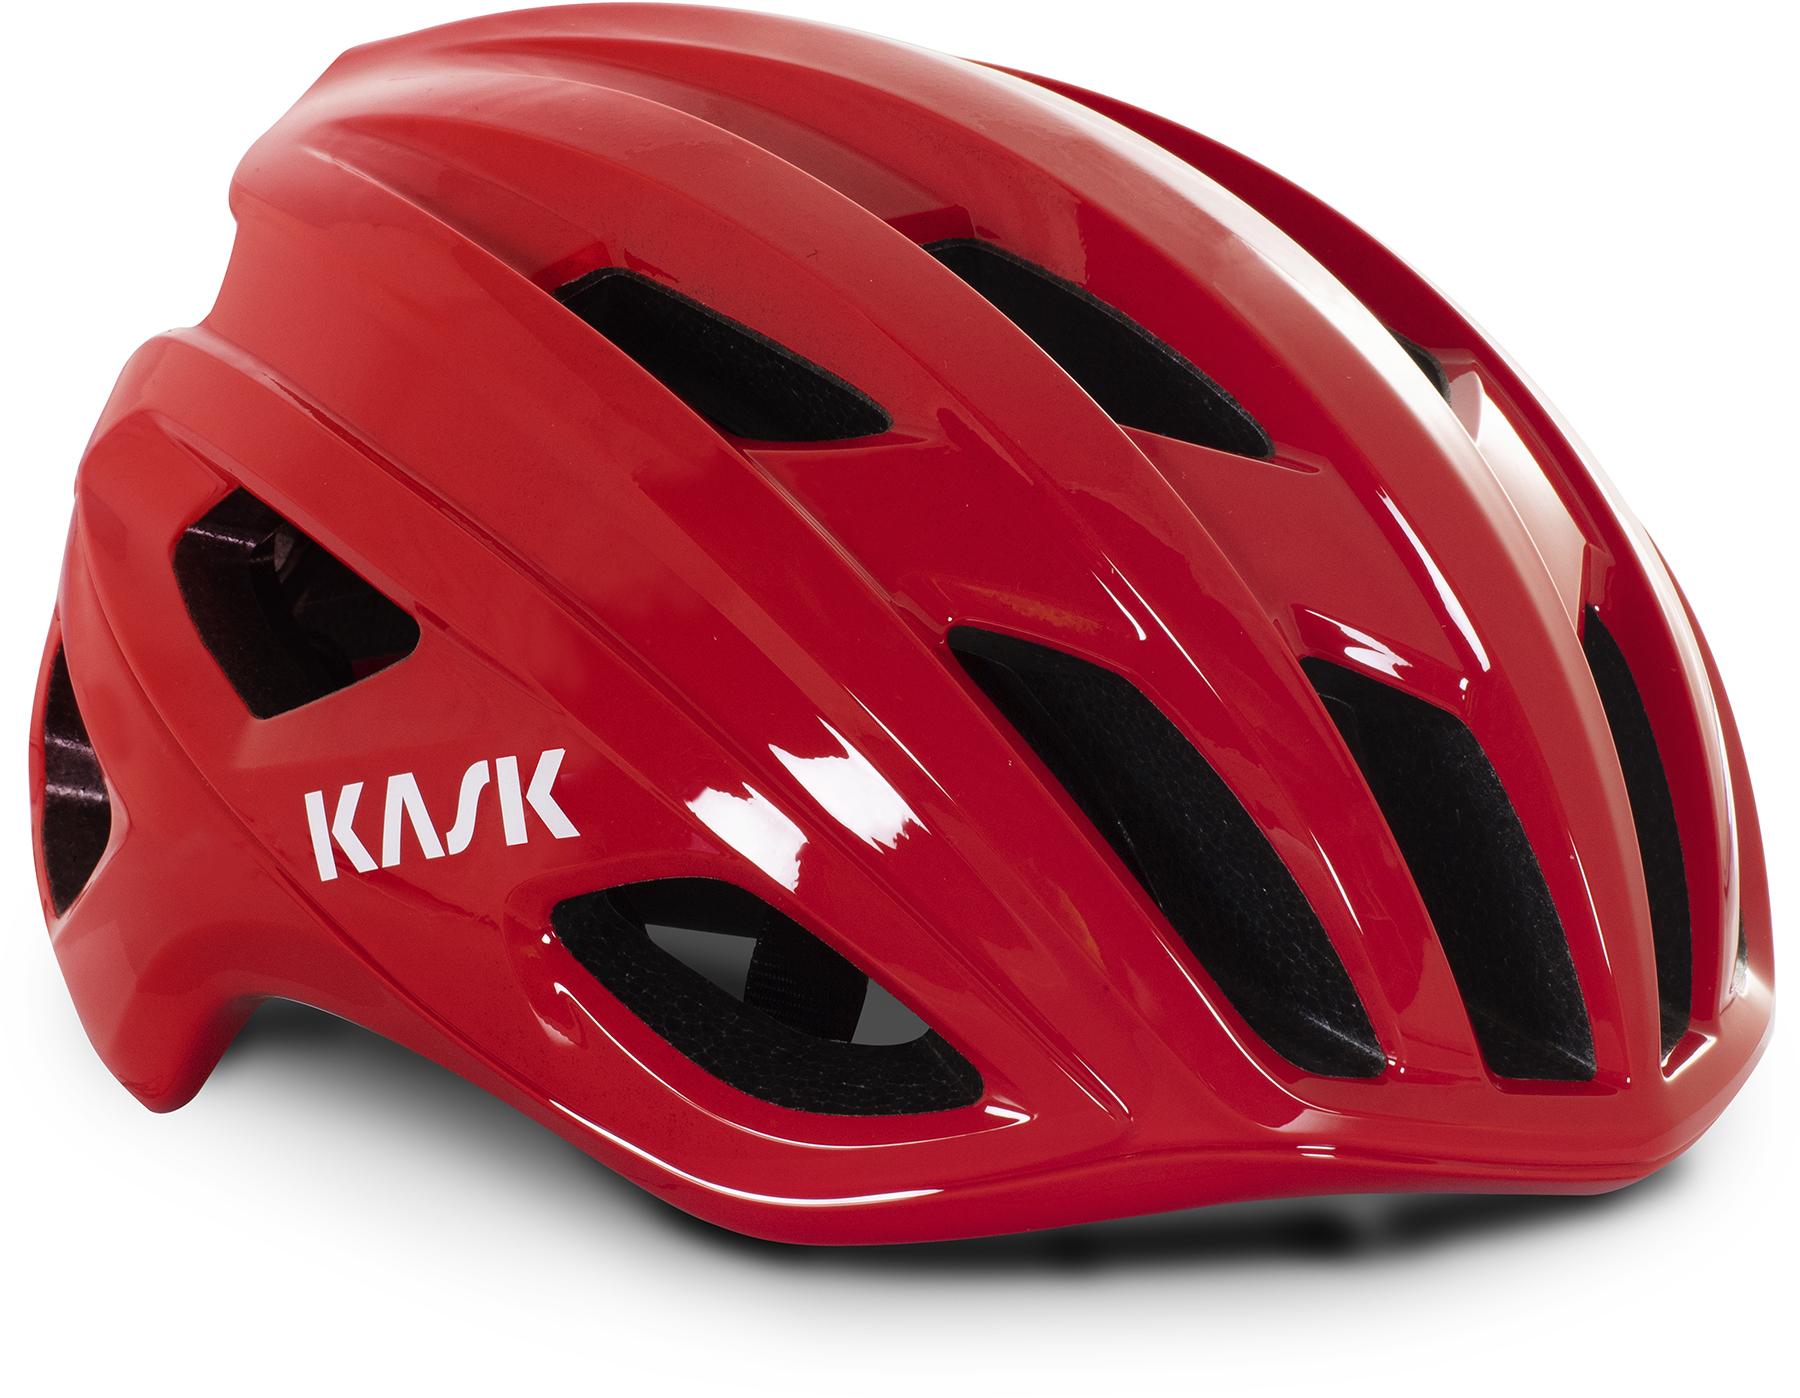 Kask Mojito3 Road Helmet (wg11)  Red